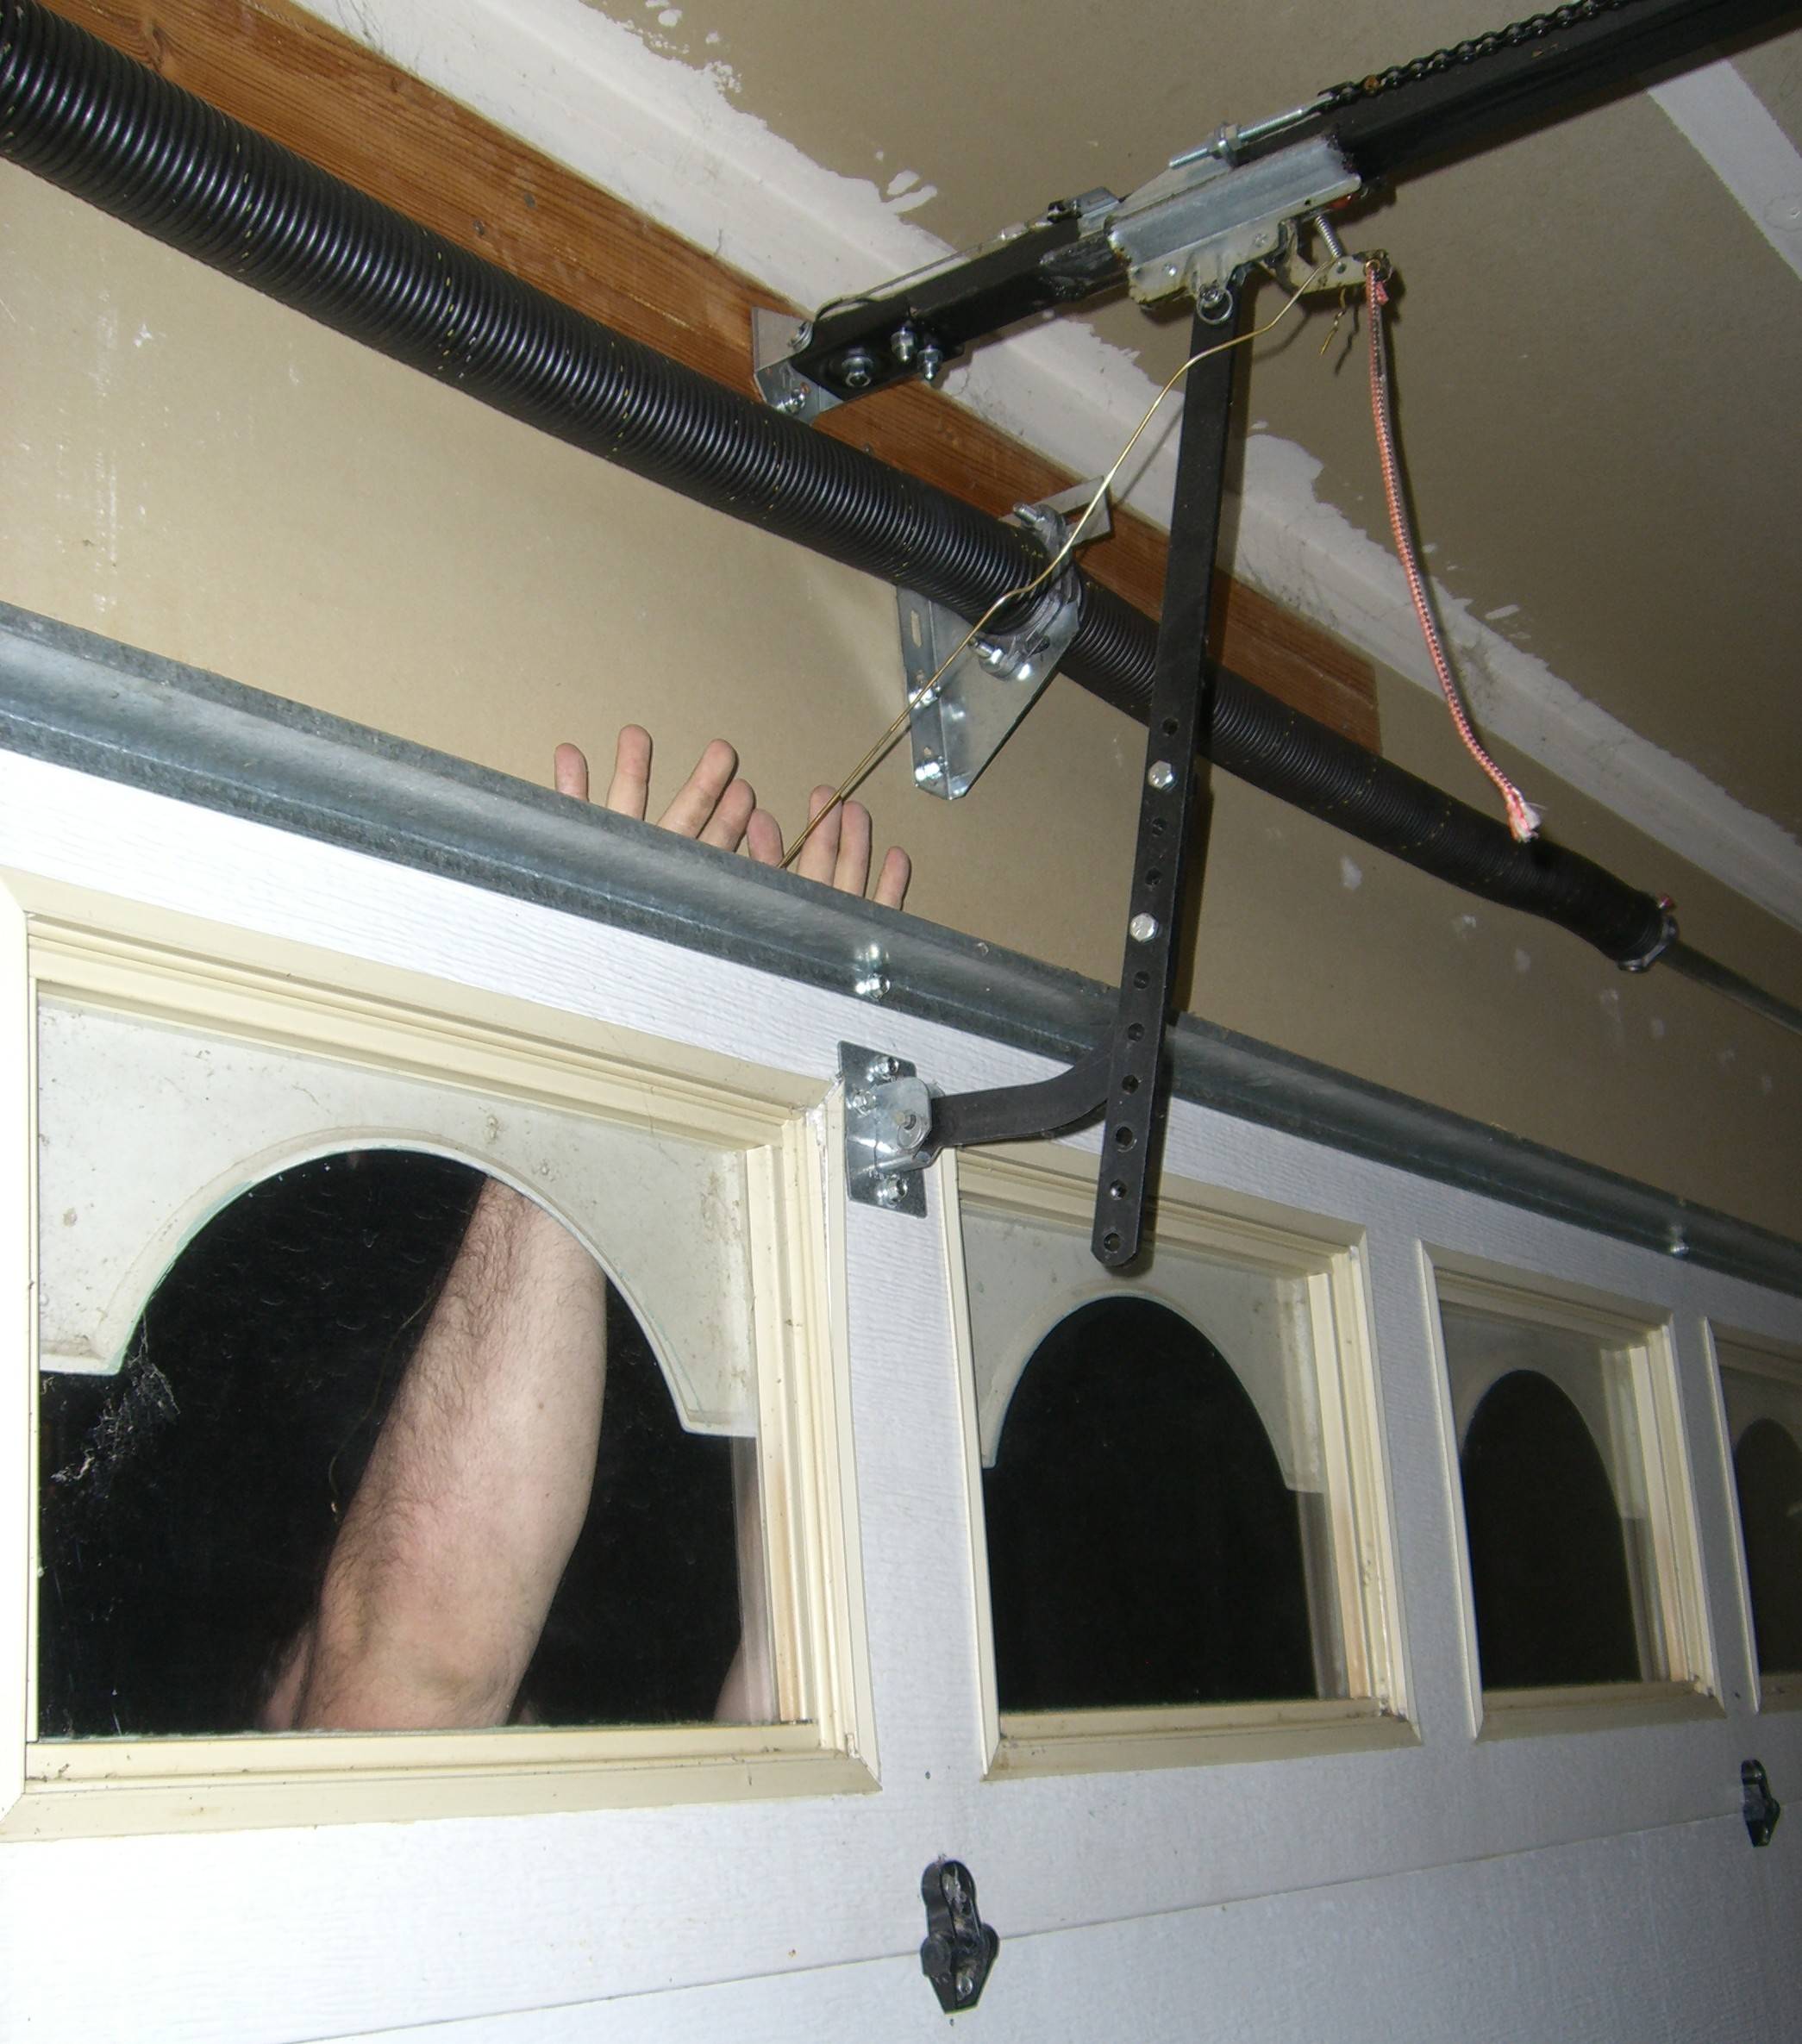 Hanger unlocking electrically-operated garage door